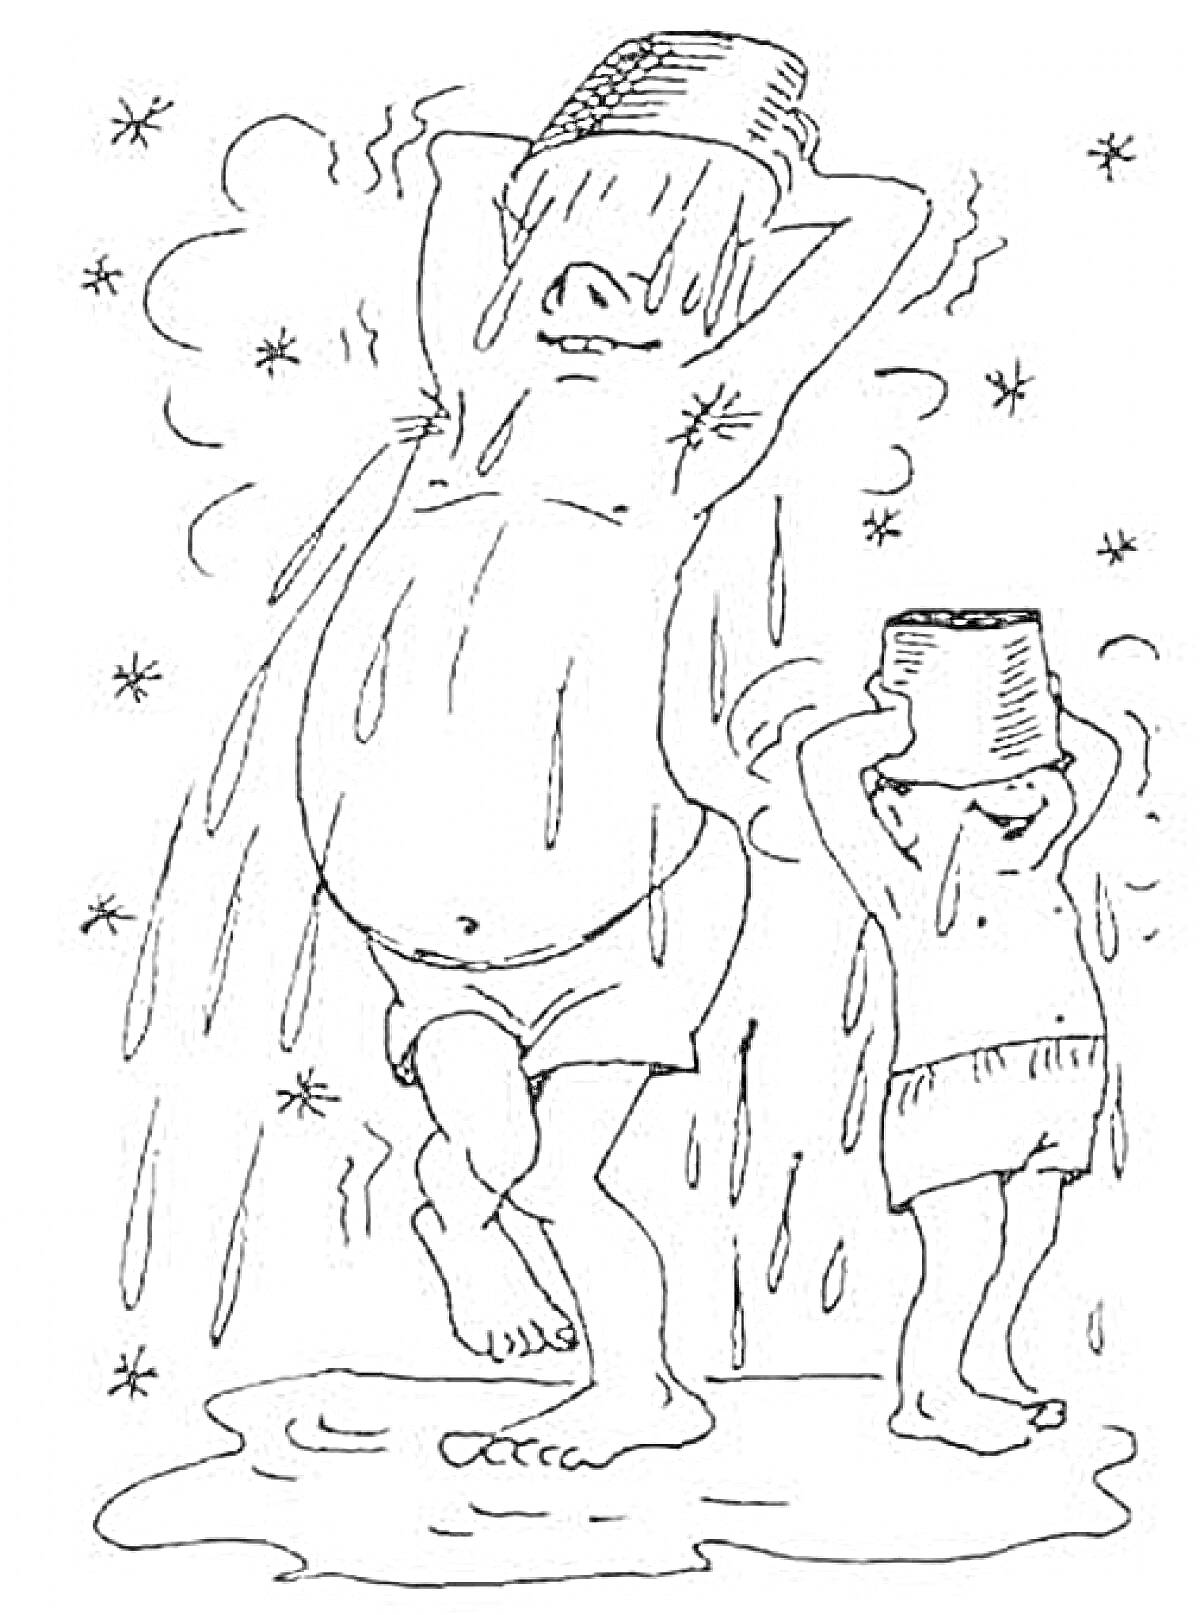 Раскраска Два человека в трусах стоят под струёй воды из ведер